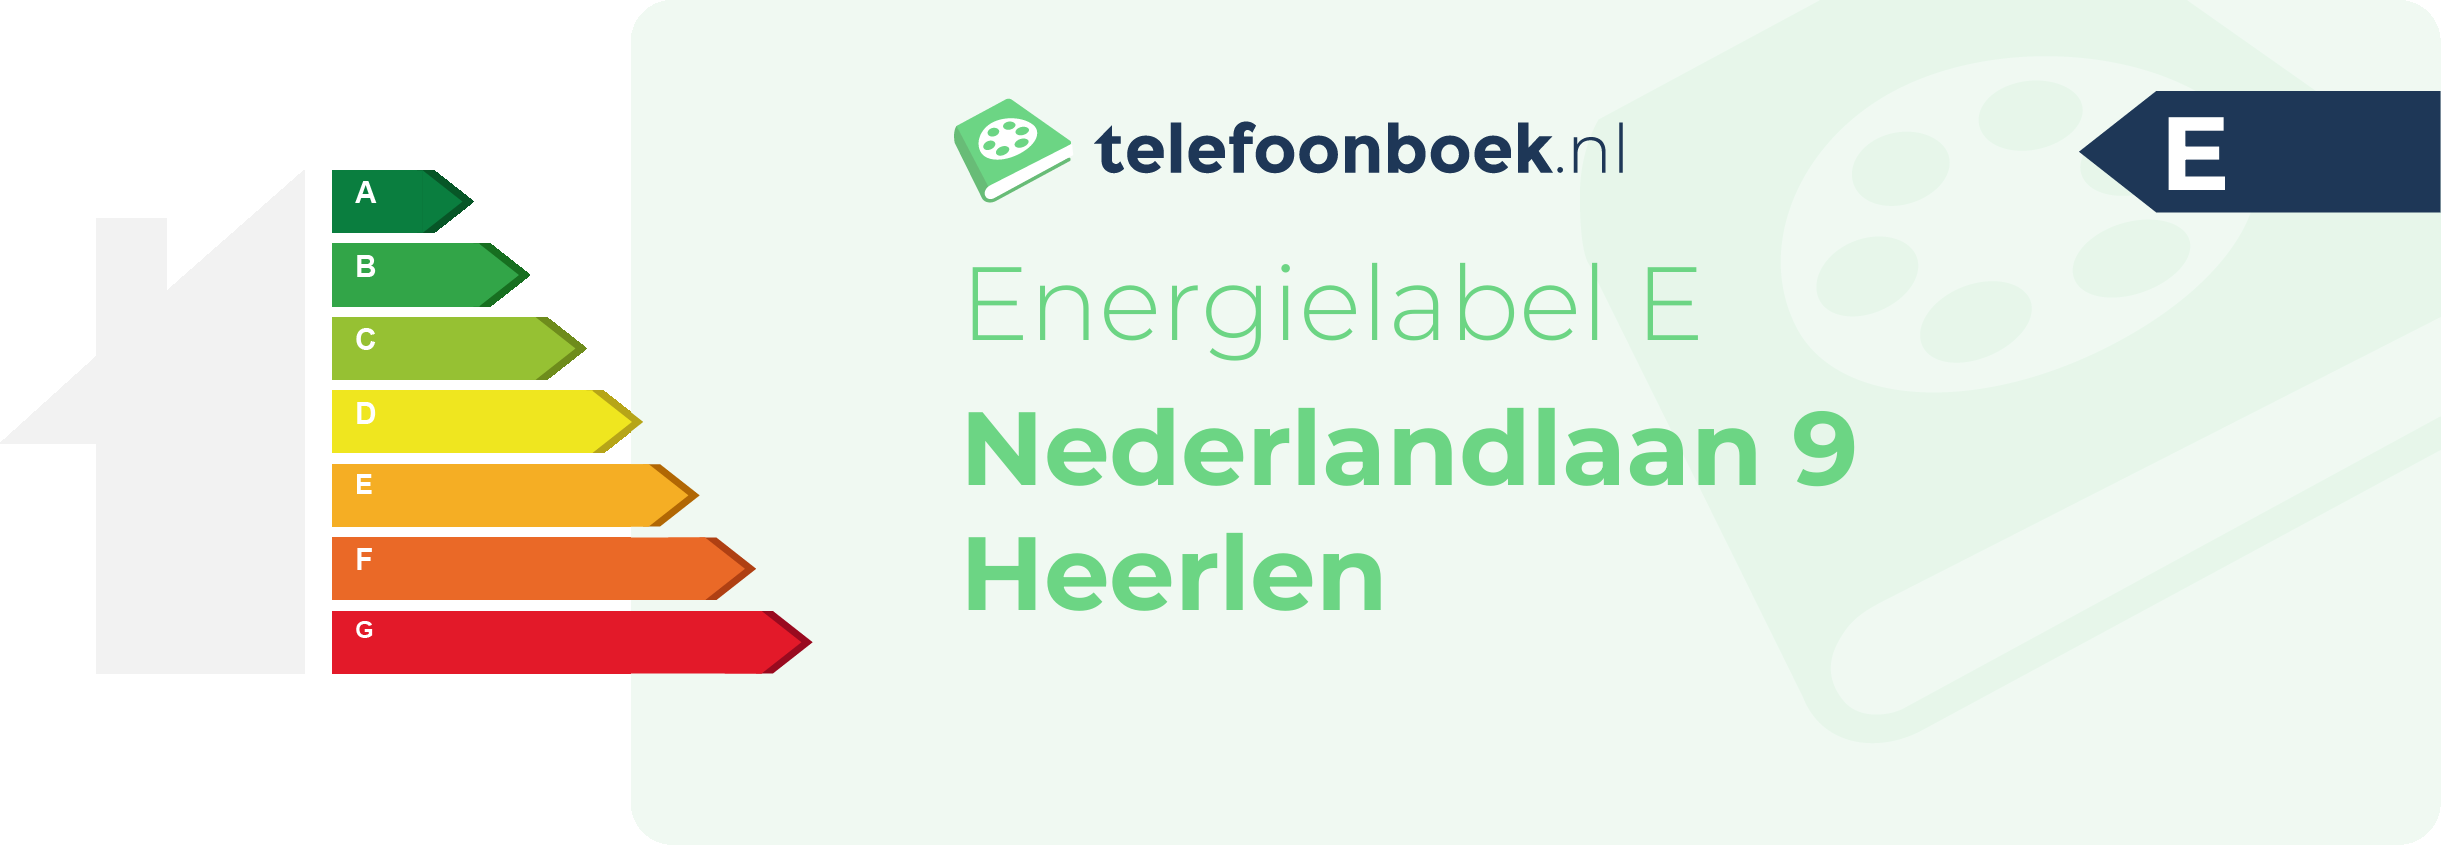 Energielabel Nederlandlaan 9 Heerlen